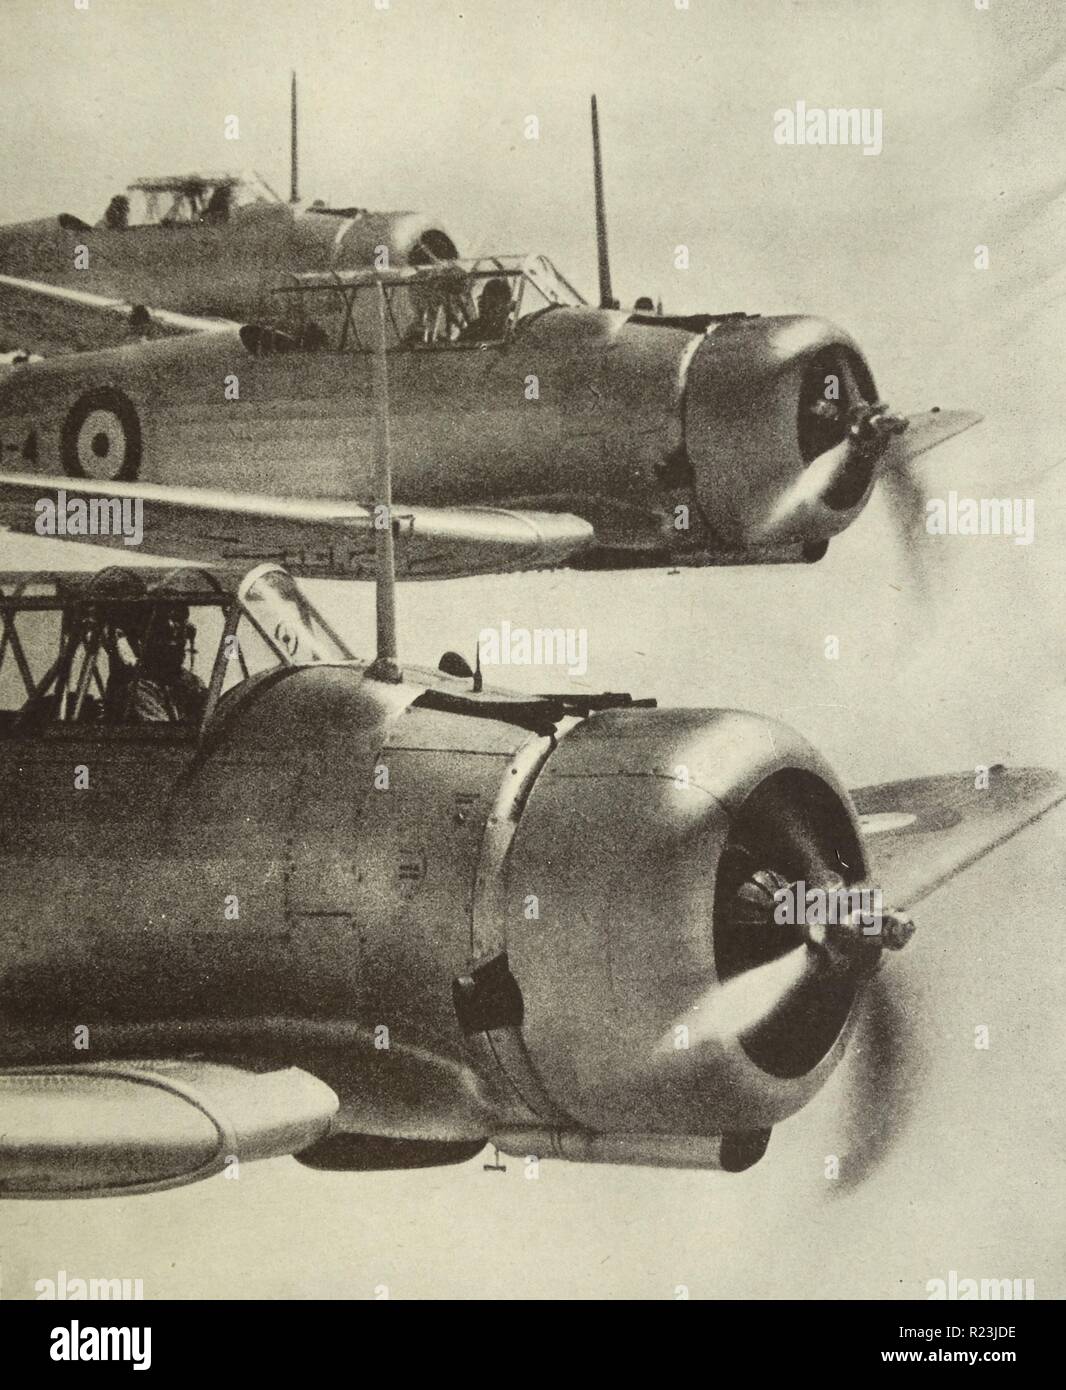 Photographie d'une société australienne de fait Wirraway plan de l'Australian Air Force sur un vol d'entraînement. Datée 1938 Banque D'Images